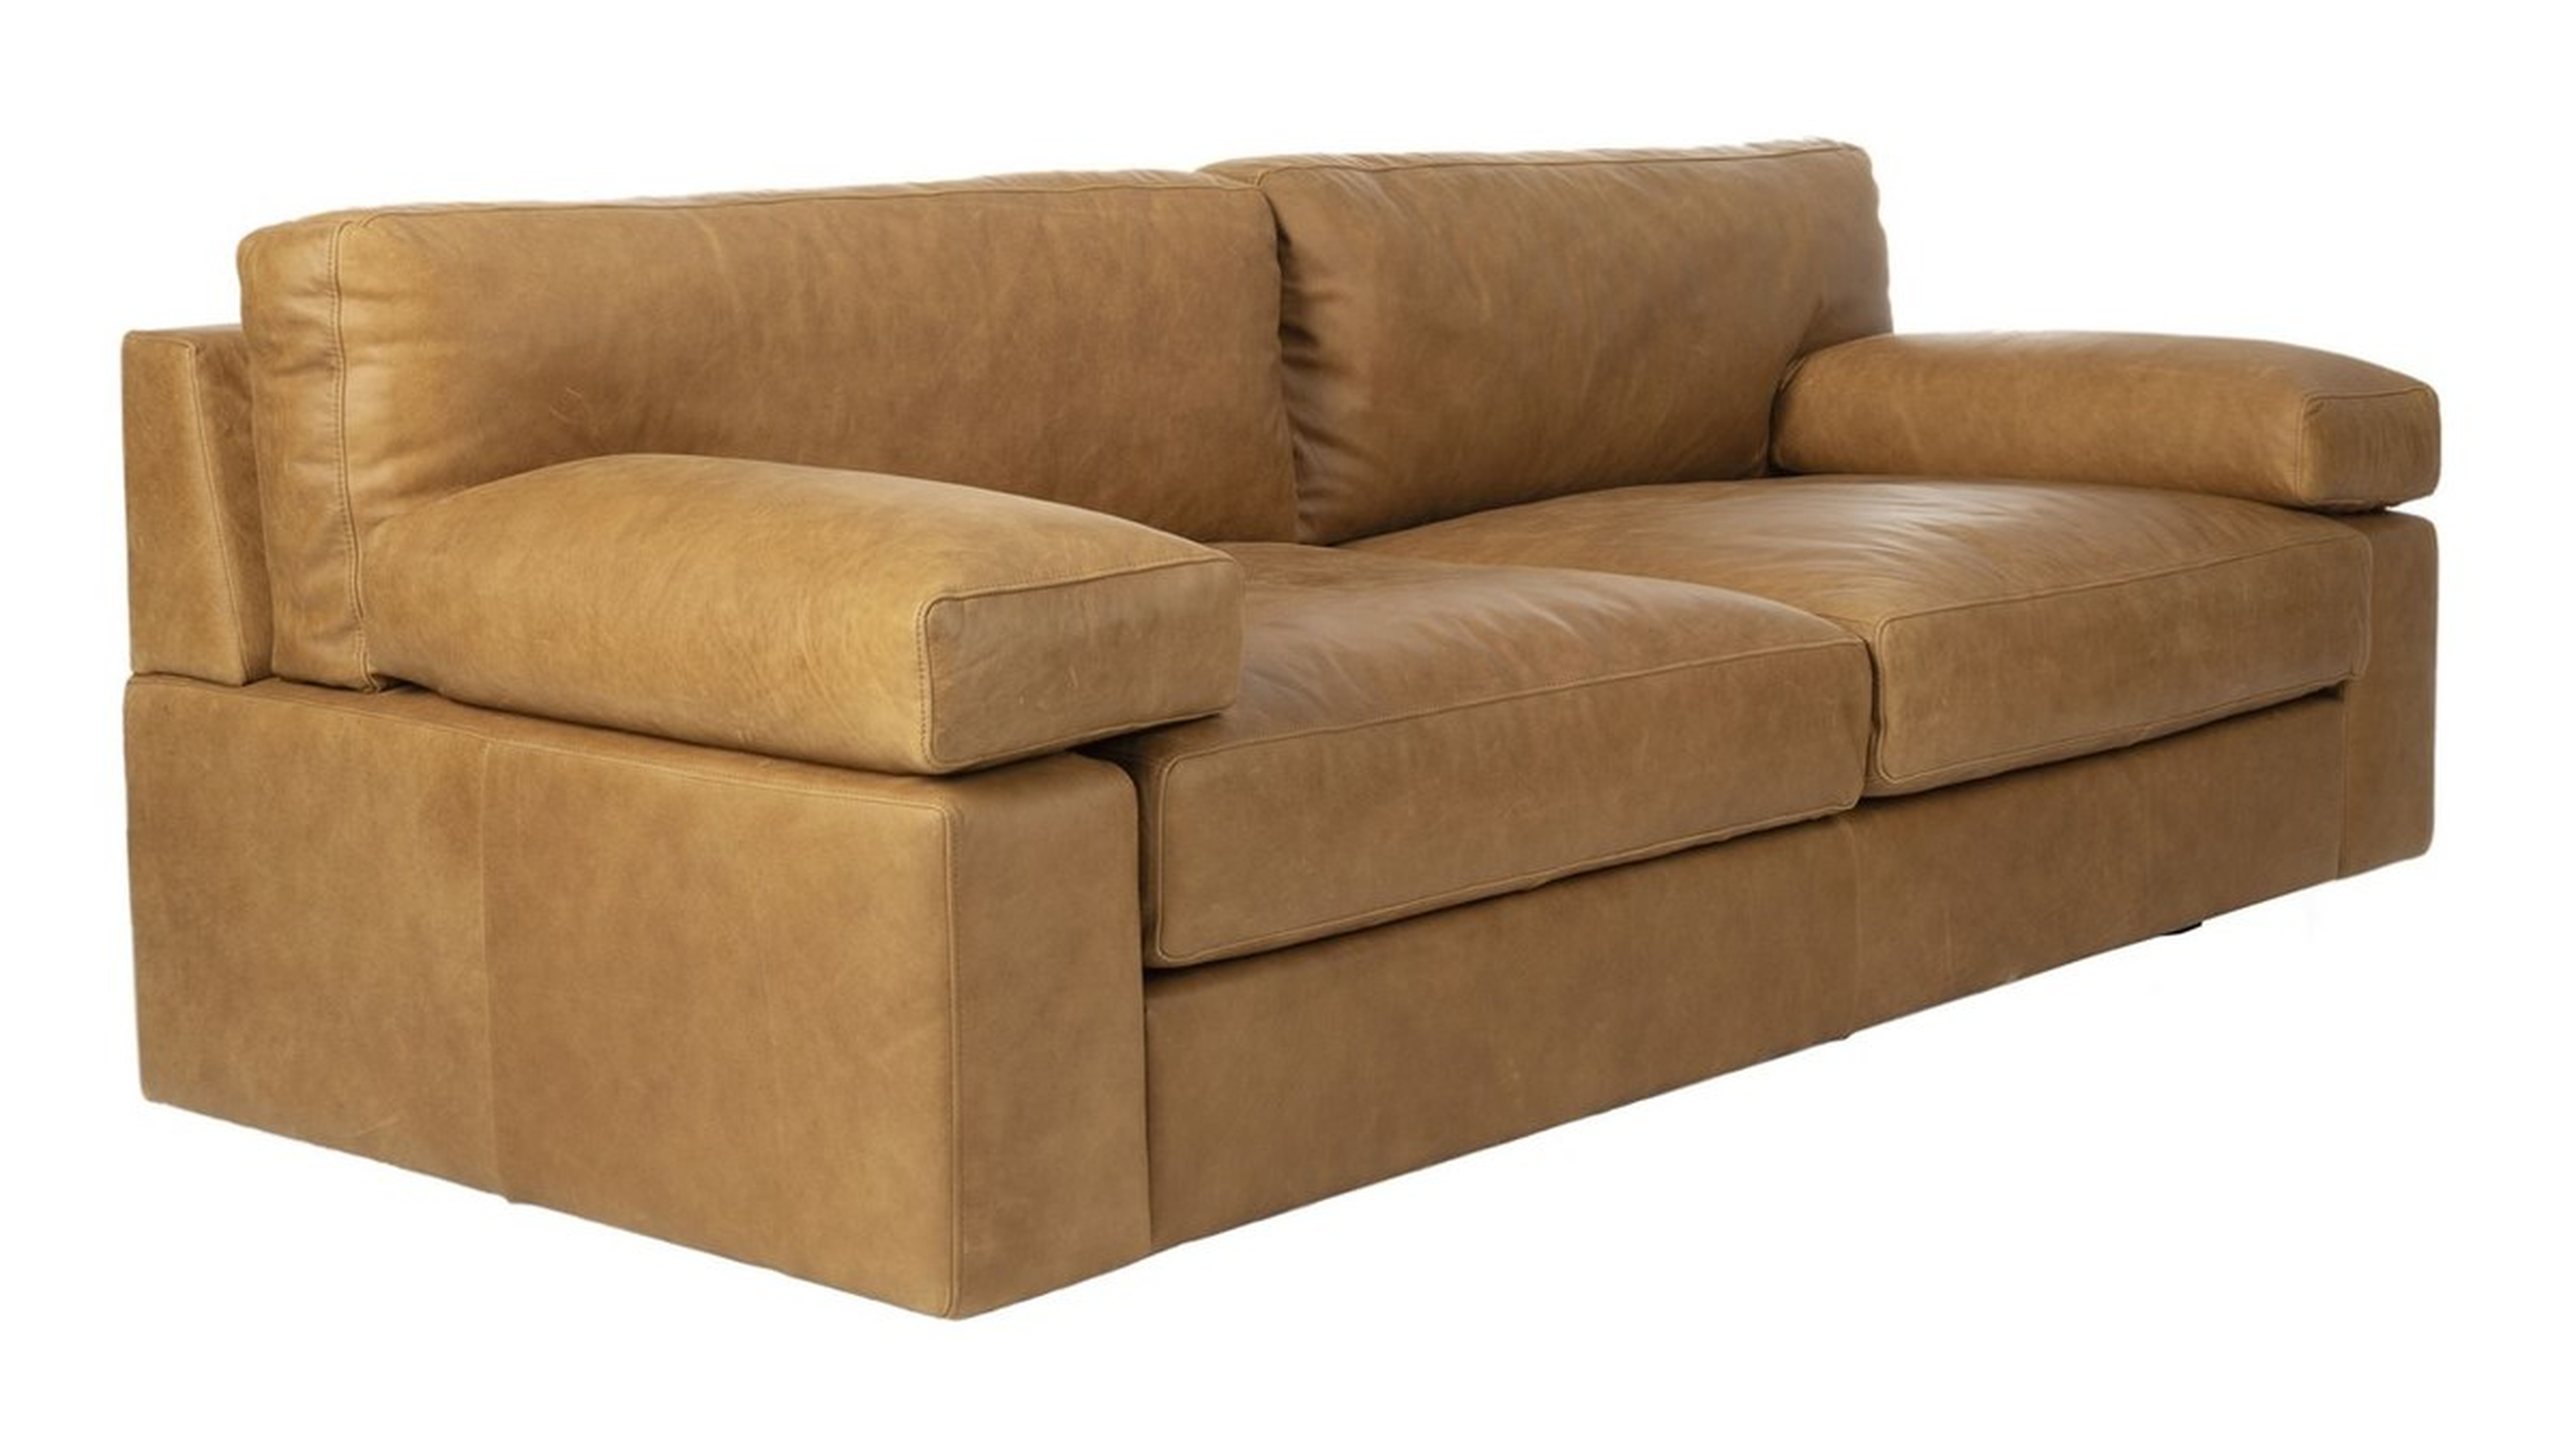 Sampson Italian Leather Sofa, Caramel - Arlo Home